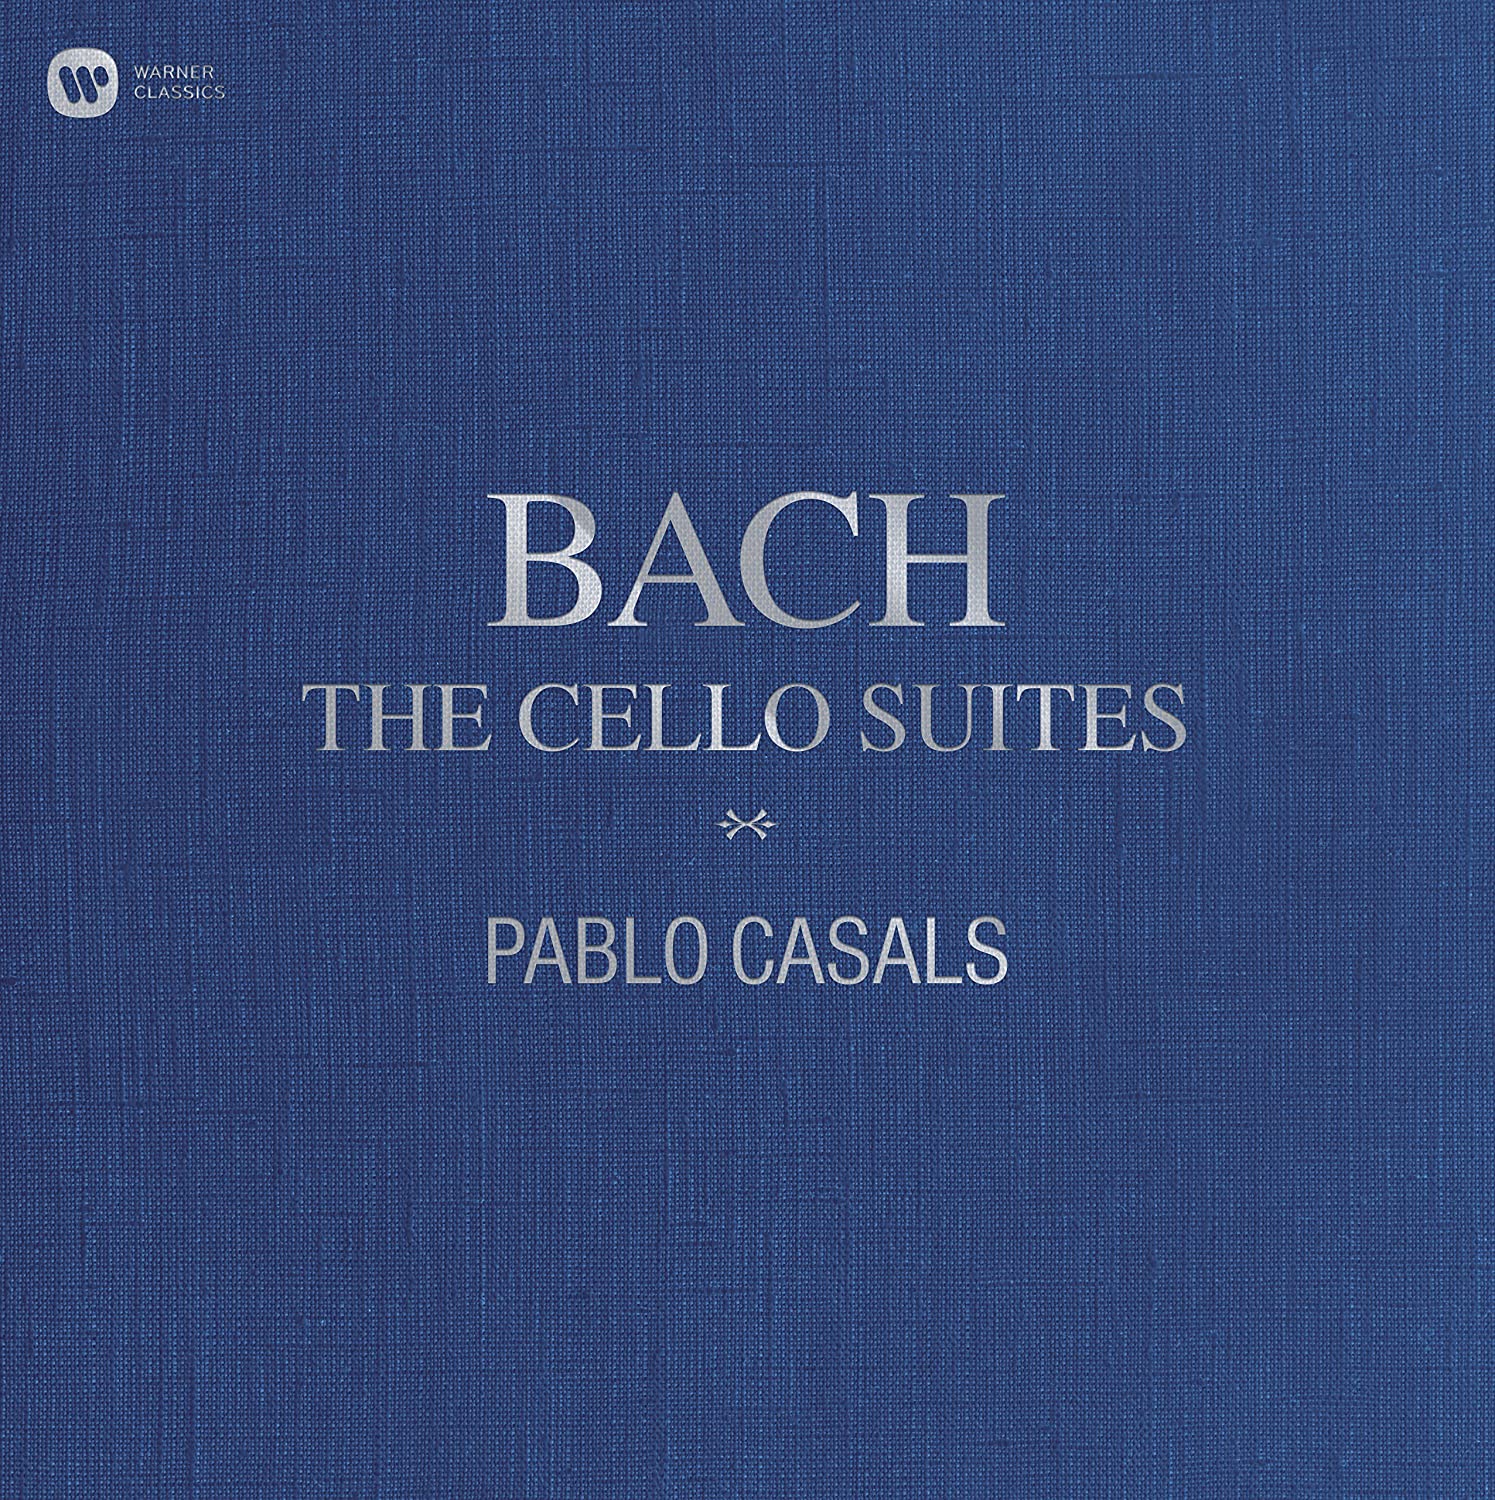 Bach: The Cello Suites - 3 LP Vinyl BOXSET | Pablo Casals